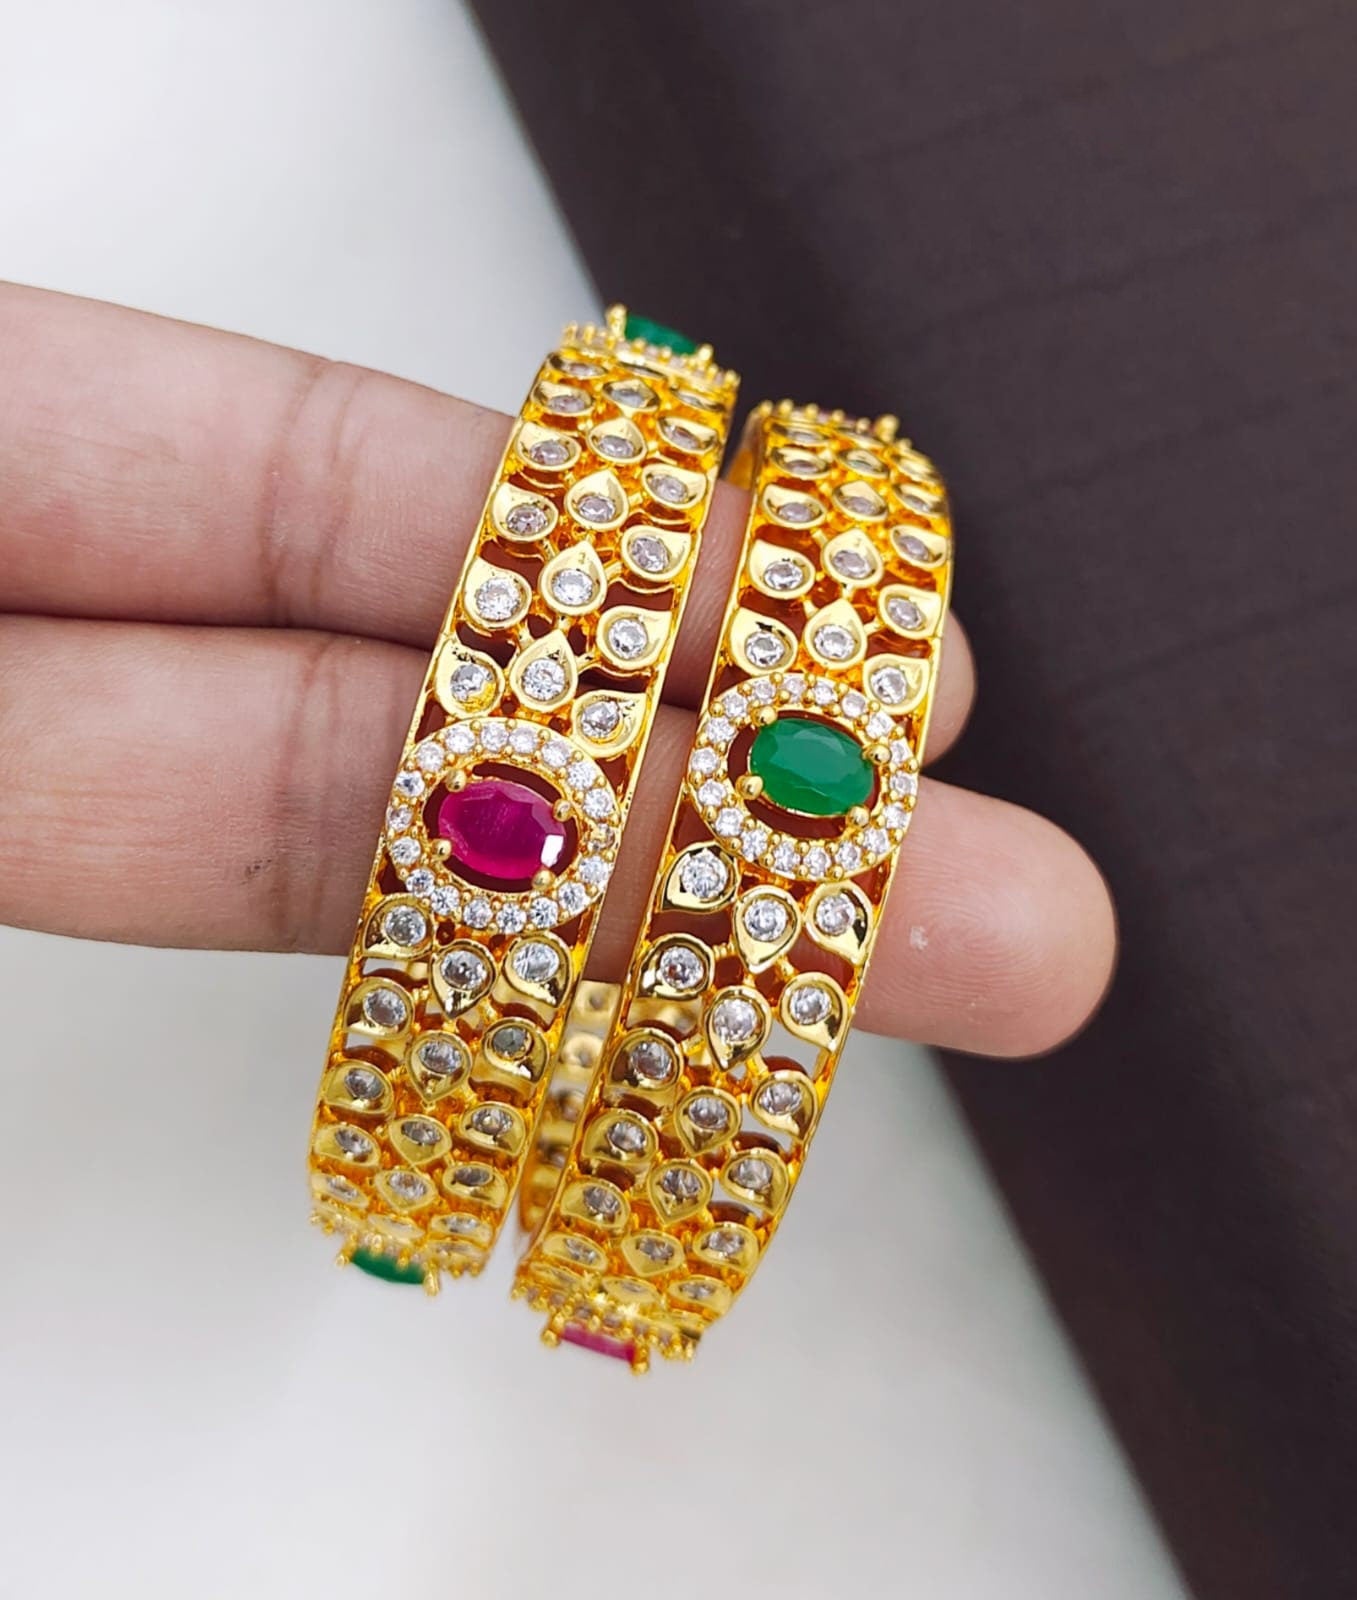 100 unique workwear diamond bracelets | Beautiful jewelry diamonds, Wedding  accessories jewelry, High jewelry bracelet